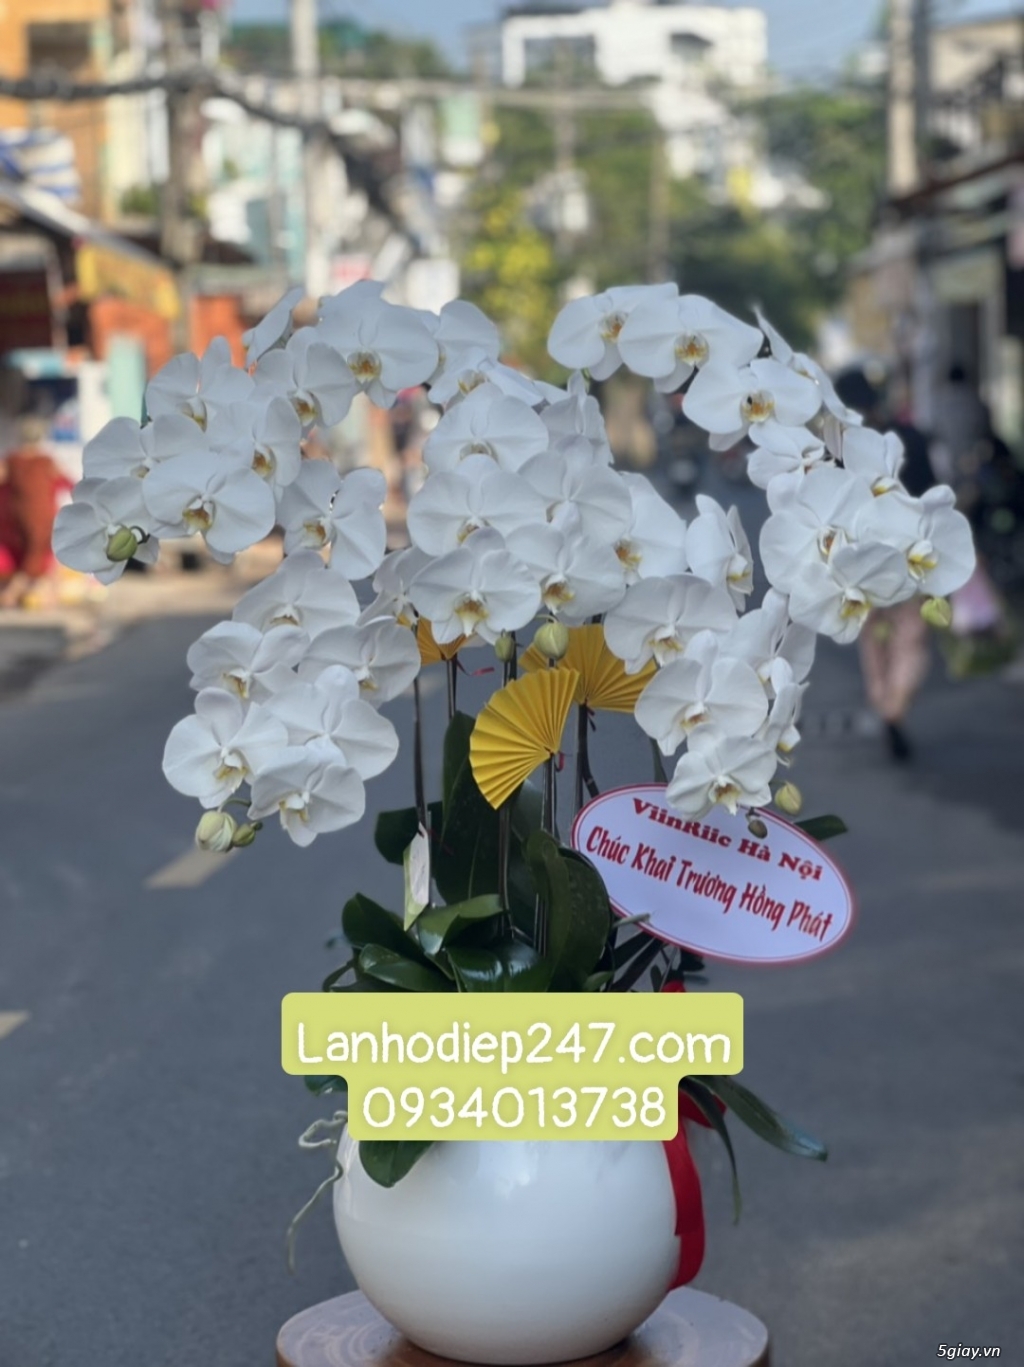 Mua Lan Hồ Điệp tại Sài Gòn, đặt hoa onine giao hàng miễn phí tại nơi - 12